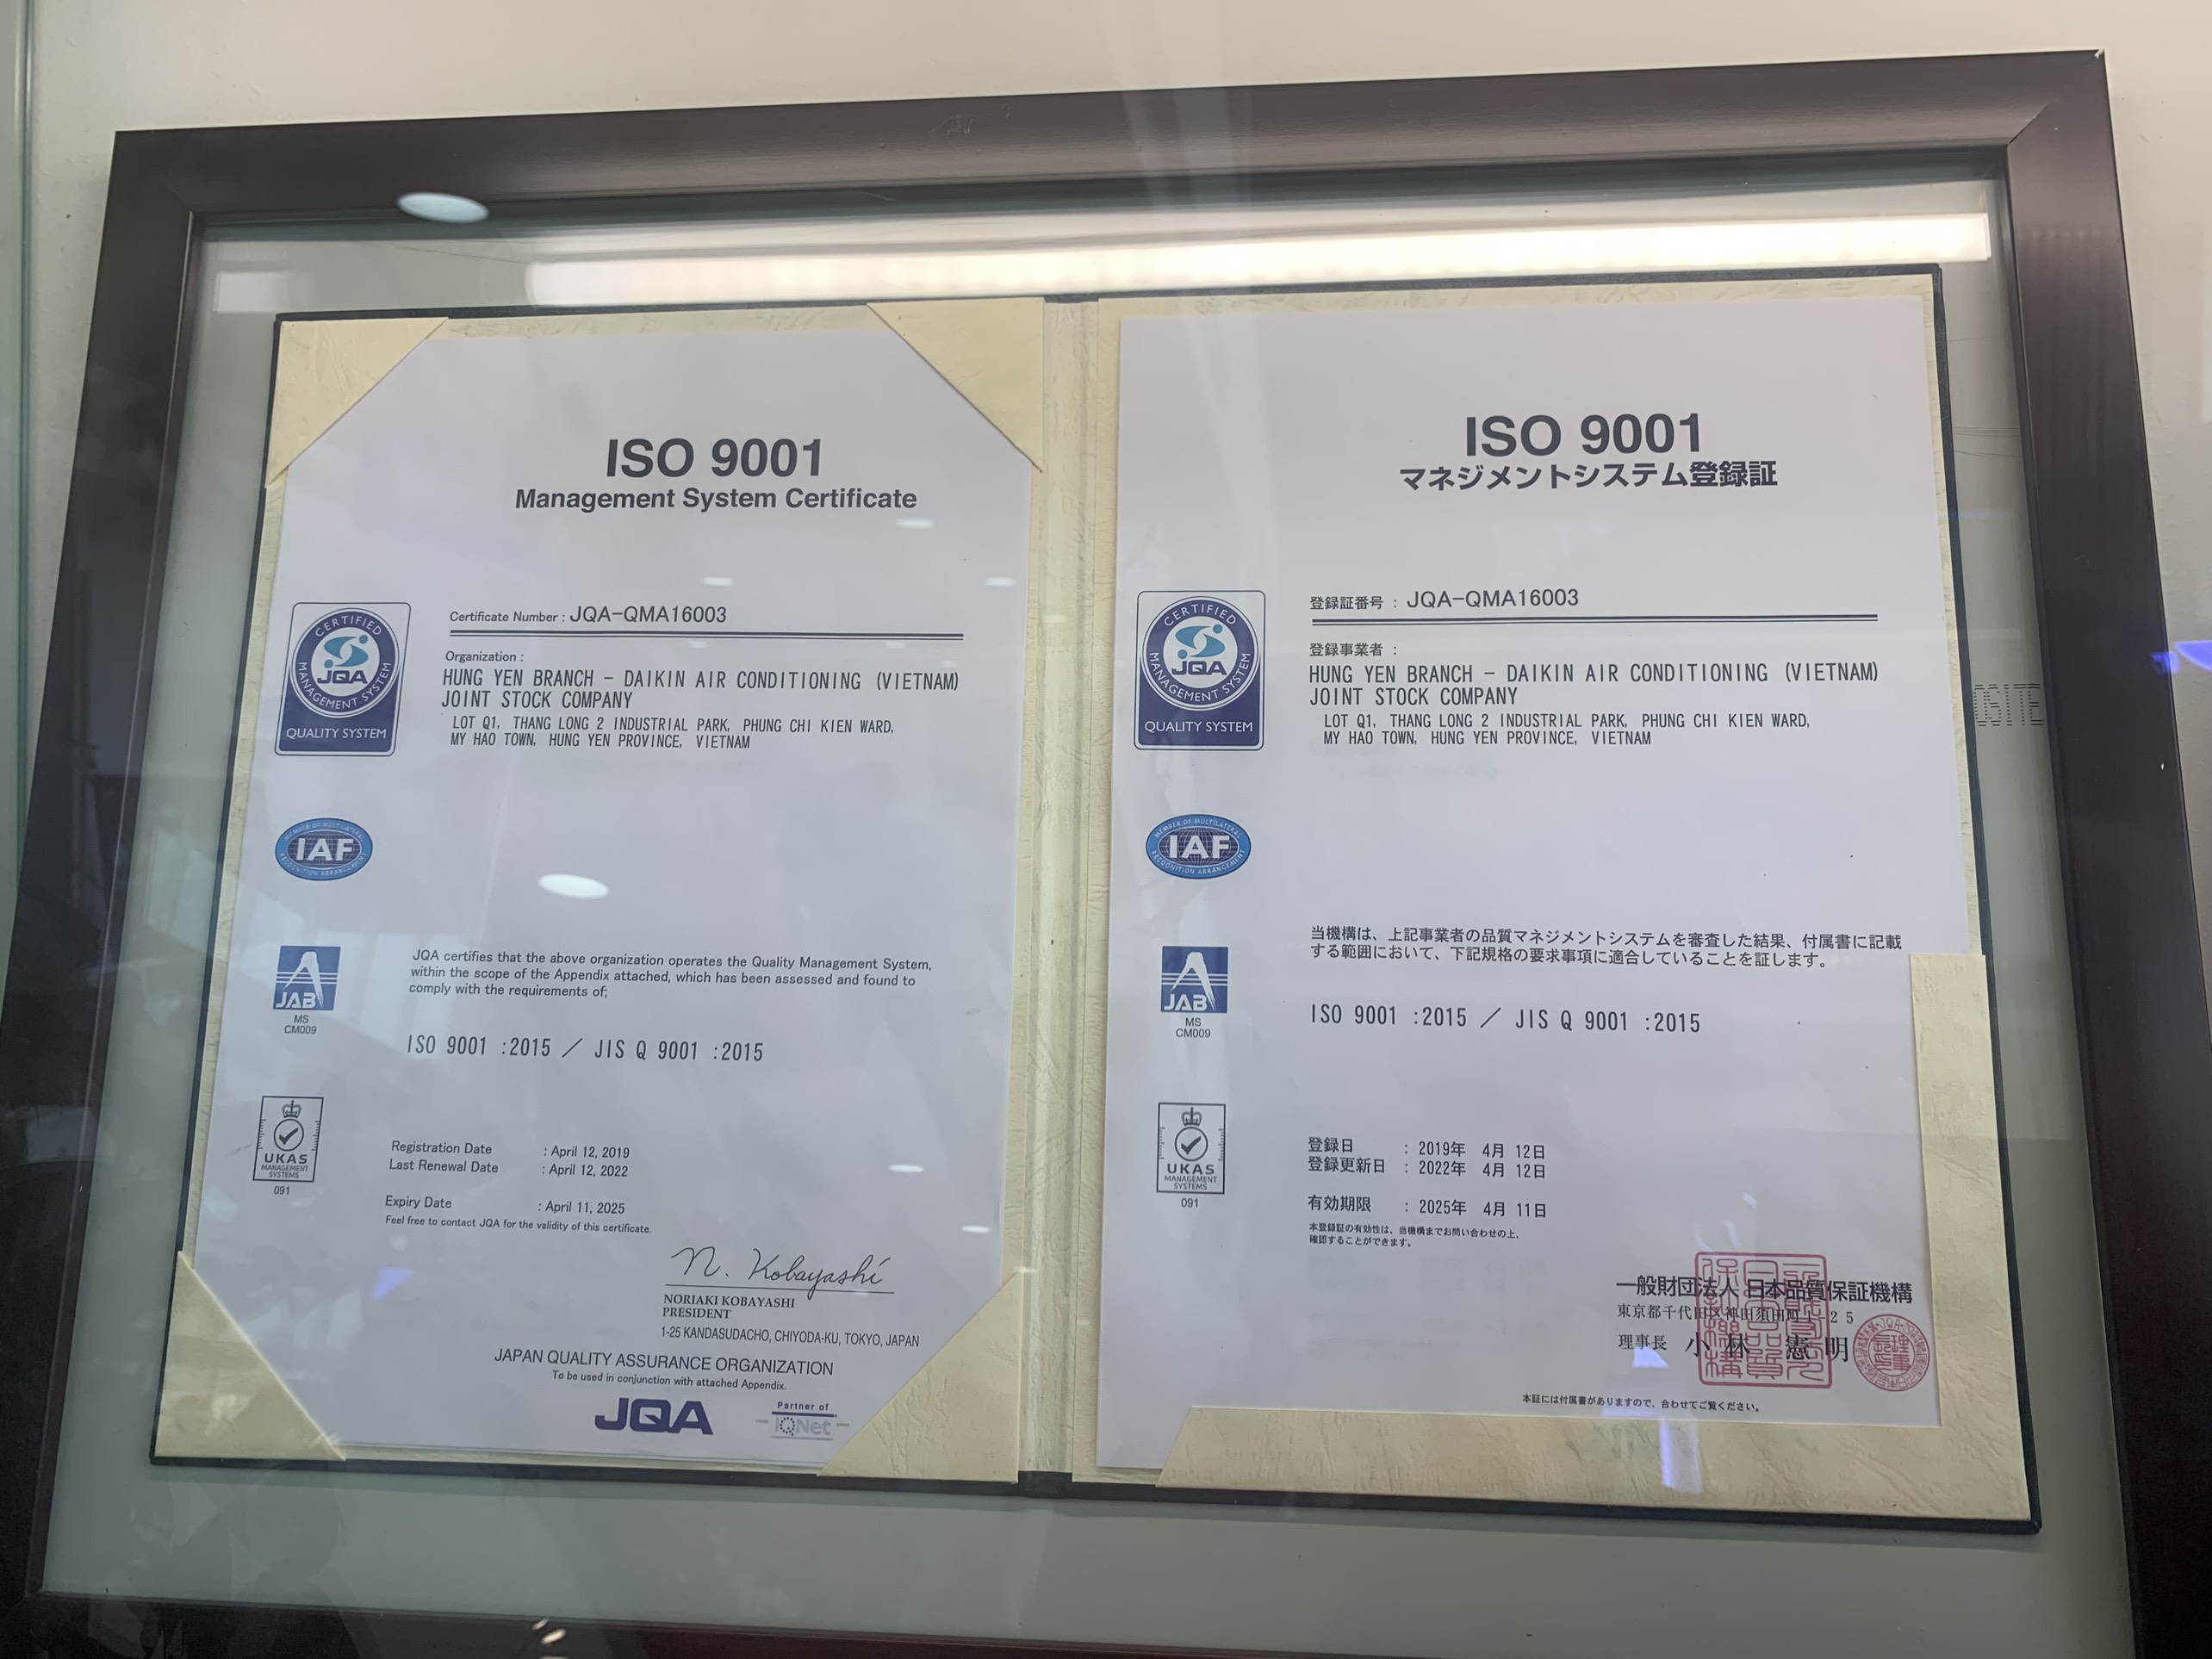 ISO 9001 ĐẠT CHUẨN CHỨNG NHẬN NHÀ MÁY HƯNG YÊN